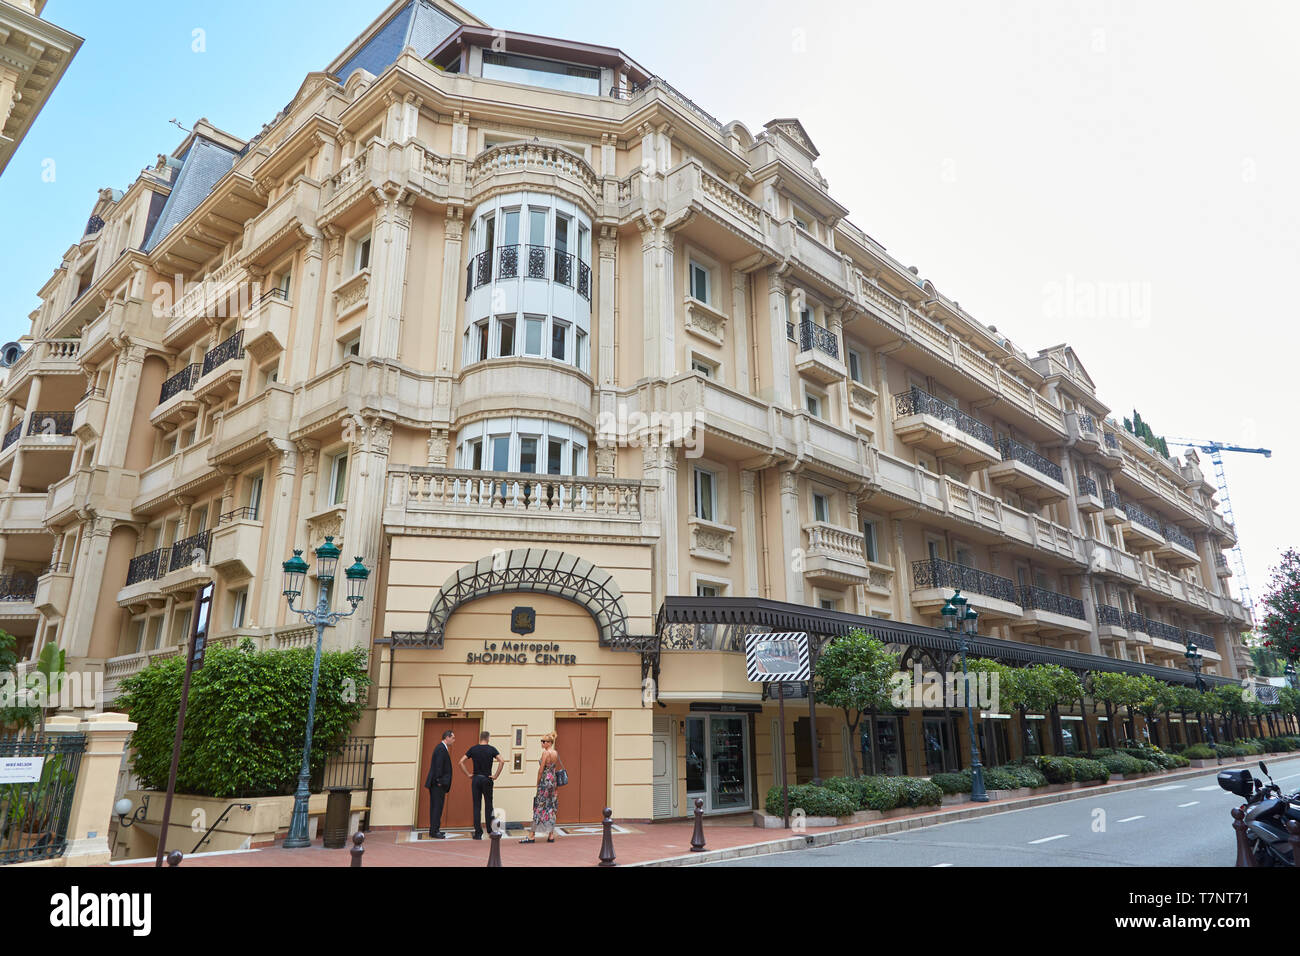 MONTE CARLO, Monaco - Agosto 19, 2016: Le Metropole, edificio del centro comercial de lujo con gente en Montecarlo, Mónaco. Foto de stock